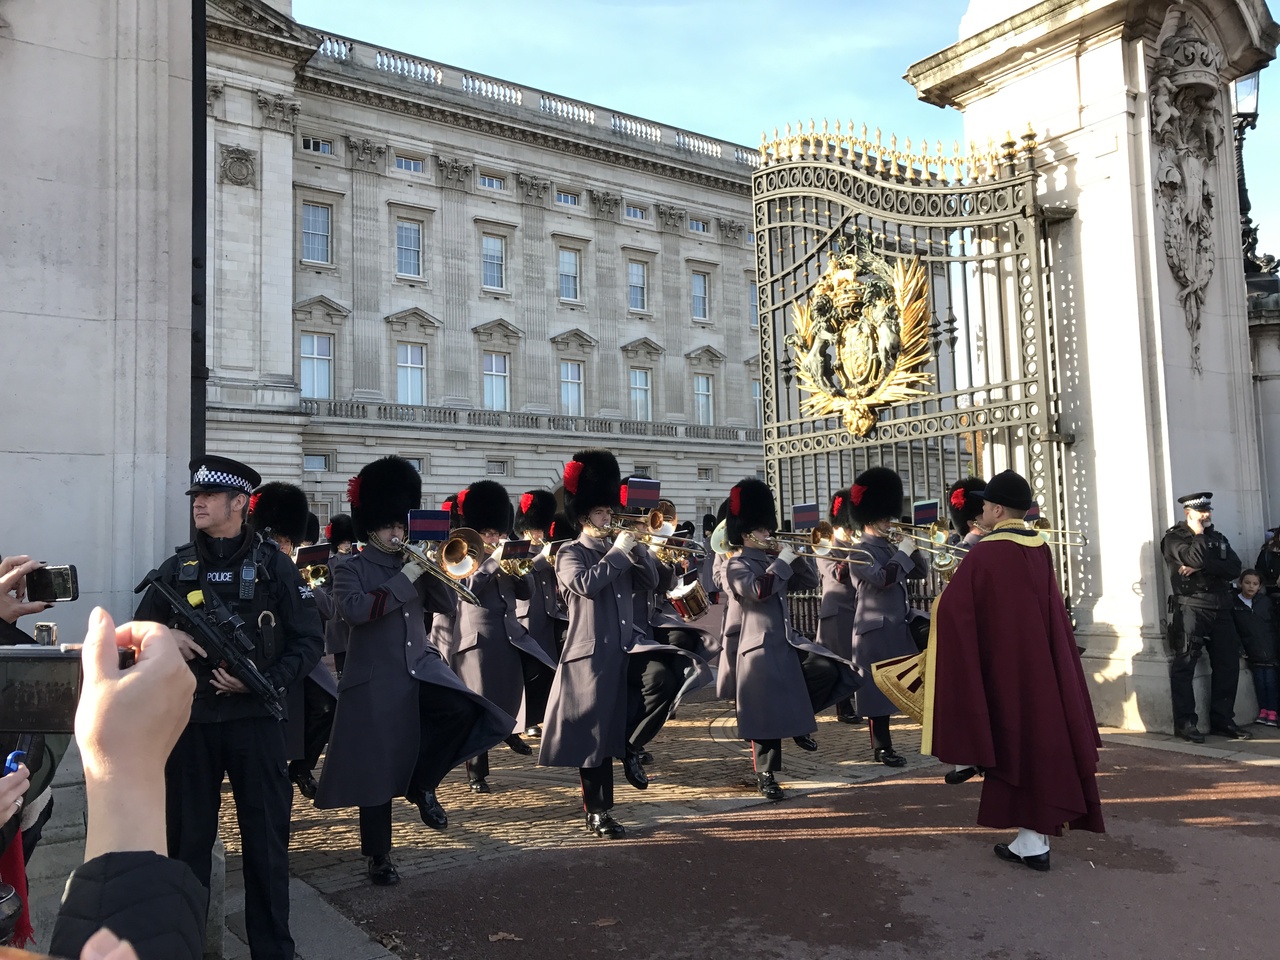 初ロンドン旅行 2 バッキンガム宮殿 衛兵交代式 大英博物館など ロンドン イギリス の旅行記 ブログ By Tumaminnさん フォートラベル